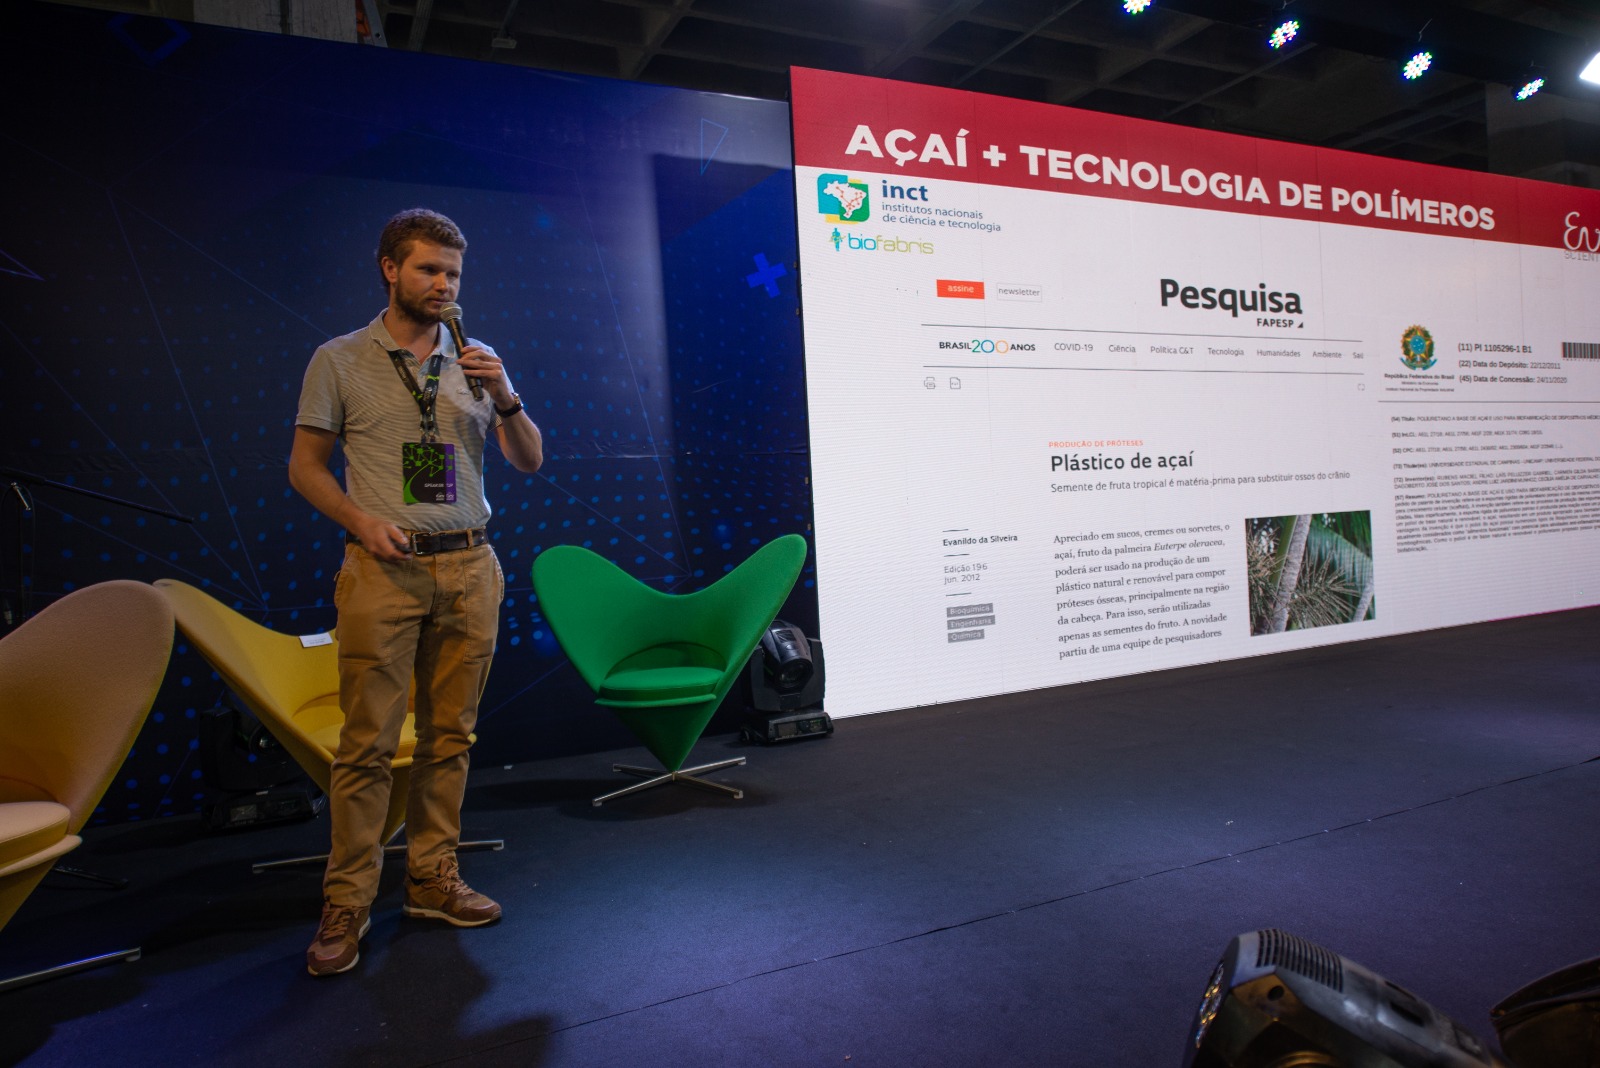 Começa nesta terça o maior evento de tecnologia e negócios da Região Norte: ExpoAmazônia Bio&TIC / Foto : Divulgação